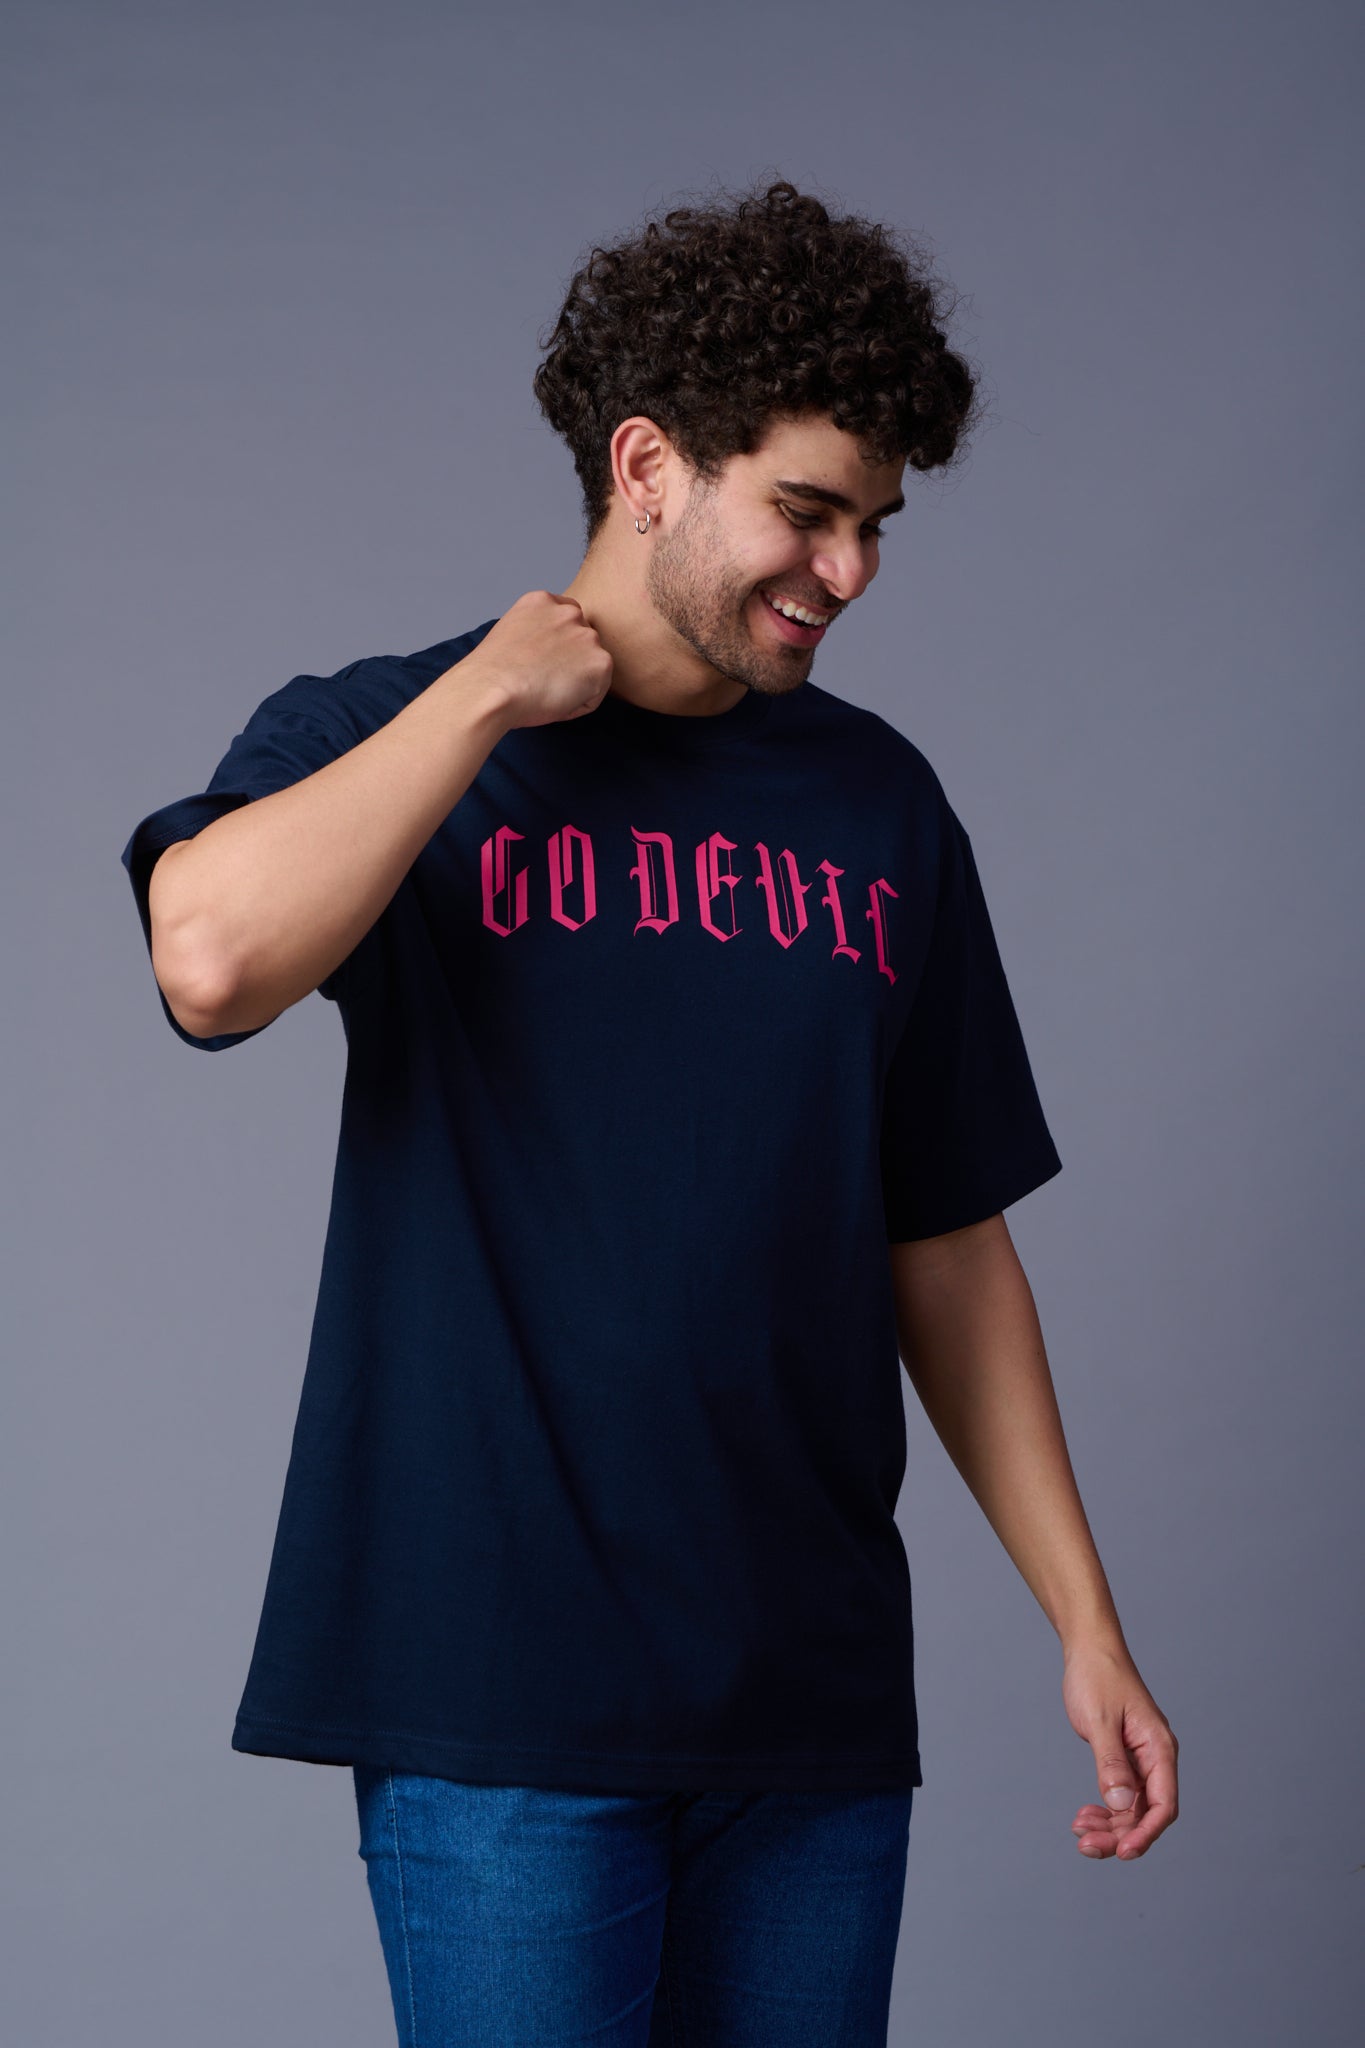 Devil  Tiger in Pink Printed Navy Blue Oversized T-Shirt for Men